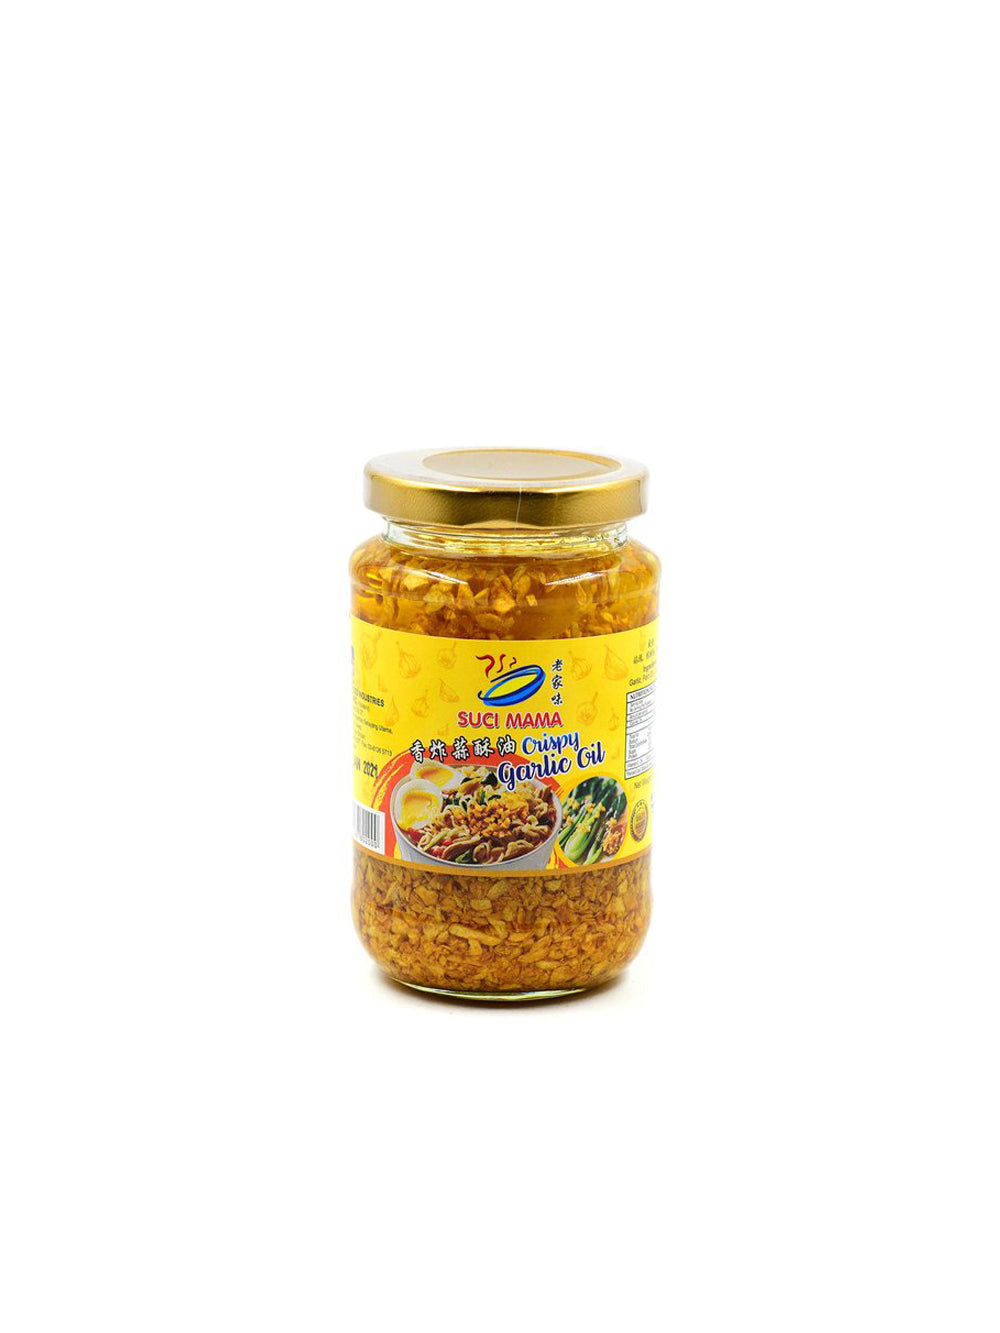 Suci Mama Crispy Garlic in Oil 蒜米香